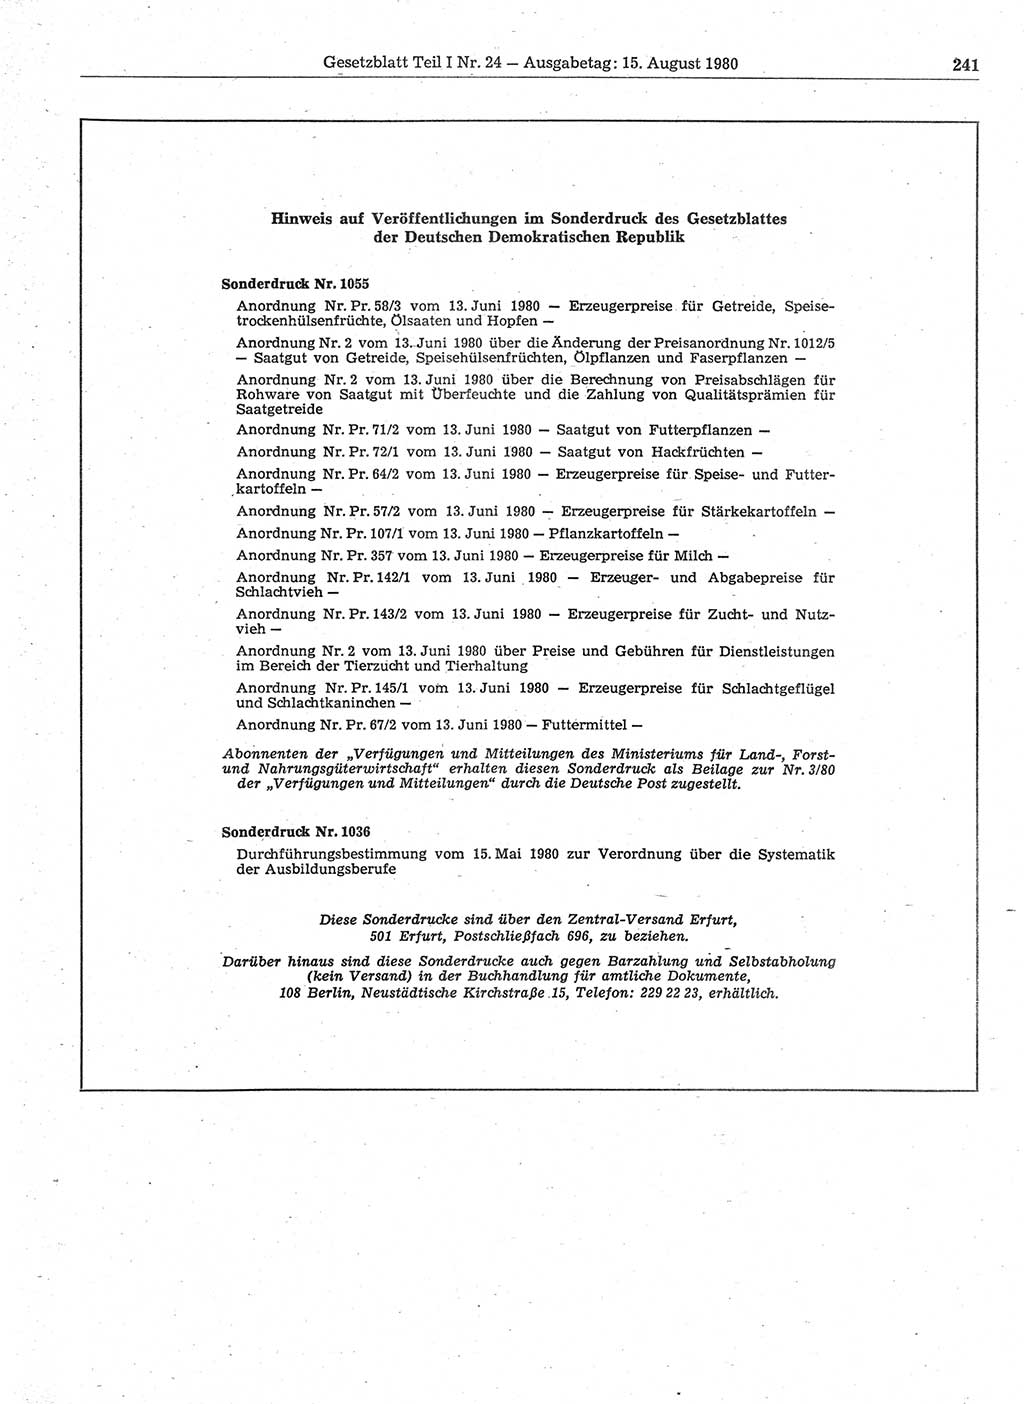 Gesetzblatt (GBl.) der Deutschen Demokratischen Republik (DDR) Teil Ⅰ 1980, Seite 241 (GBl. DDR Ⅰ 1980, S. 241)